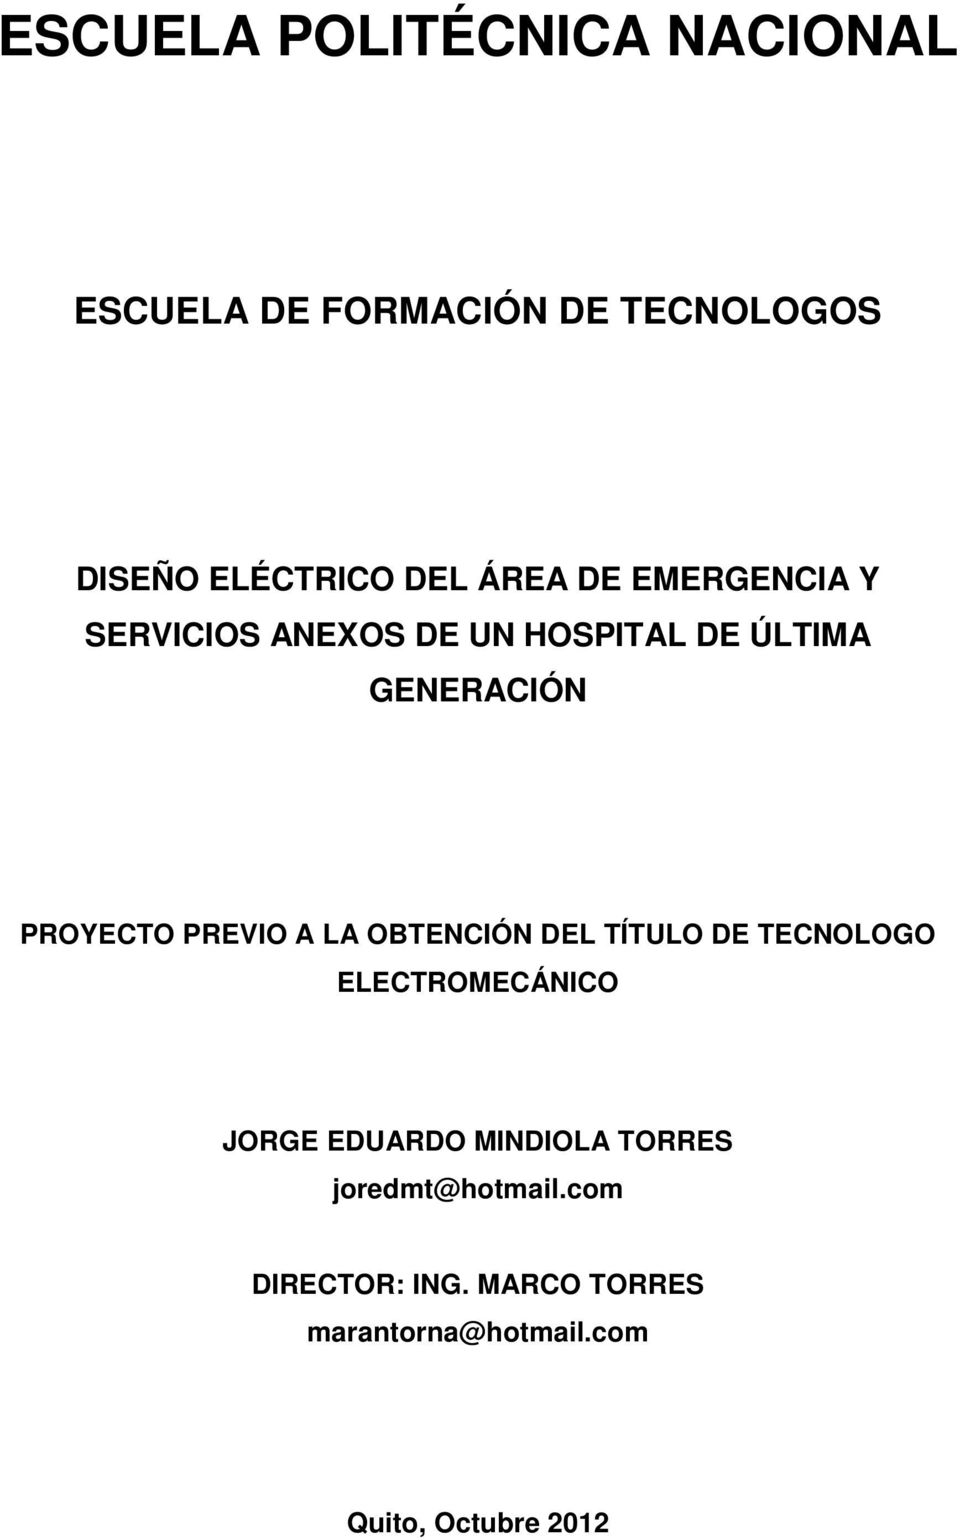 PREVIO A LA OBTENCIÓN DEL TÍTULO DE TECNOLOGO ELECTROMECÁNICO JORGE EDUARDO MINDIOLA